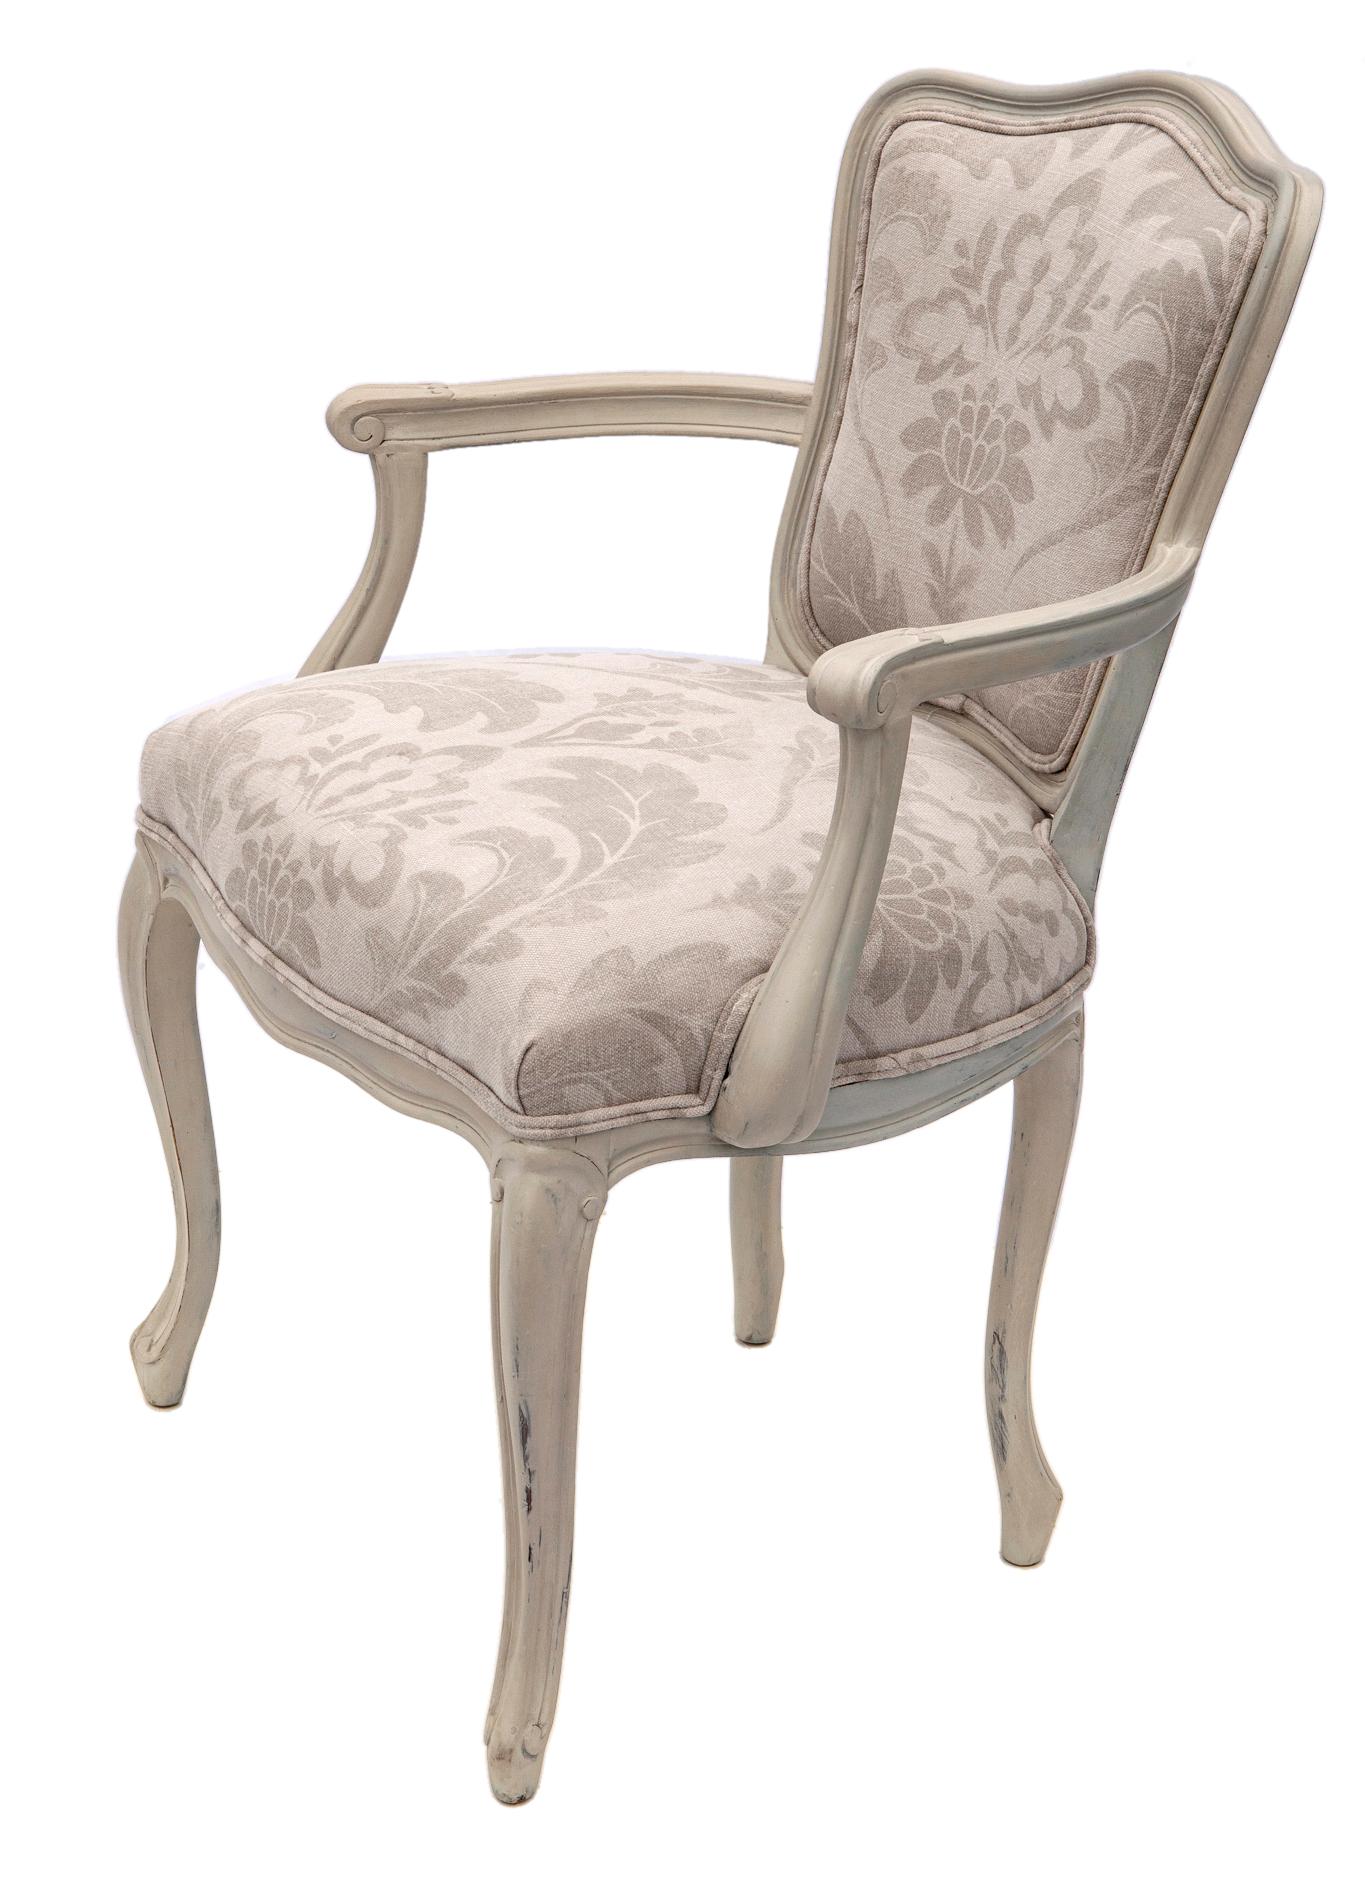 Dieser atemberaubende Stuhl zeichnet sich durch elegante, handbemalte Kurven in Grautönen aus.
Die Sitzfläche und die Rückenlehne wurden mit einem Leinendamast von Romo neu bezogen. 
Dieser Stuhl ist ein unglaublich bequemer Stuhl mit einer